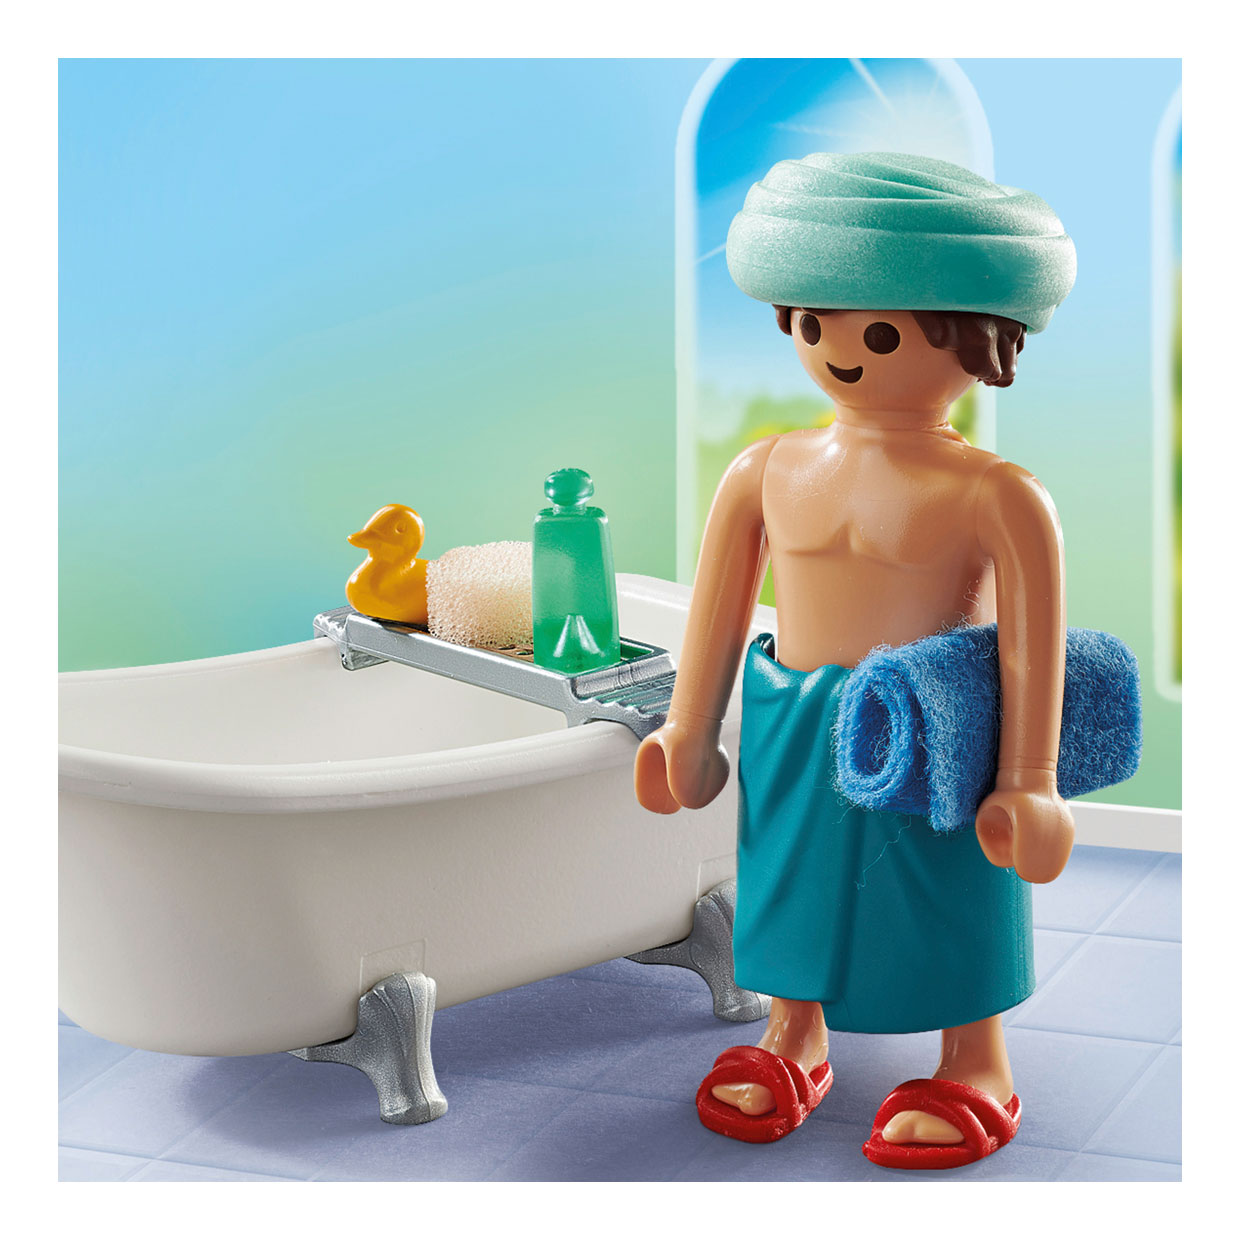 Playmobil Specials Homme dans la baignoire - 71167